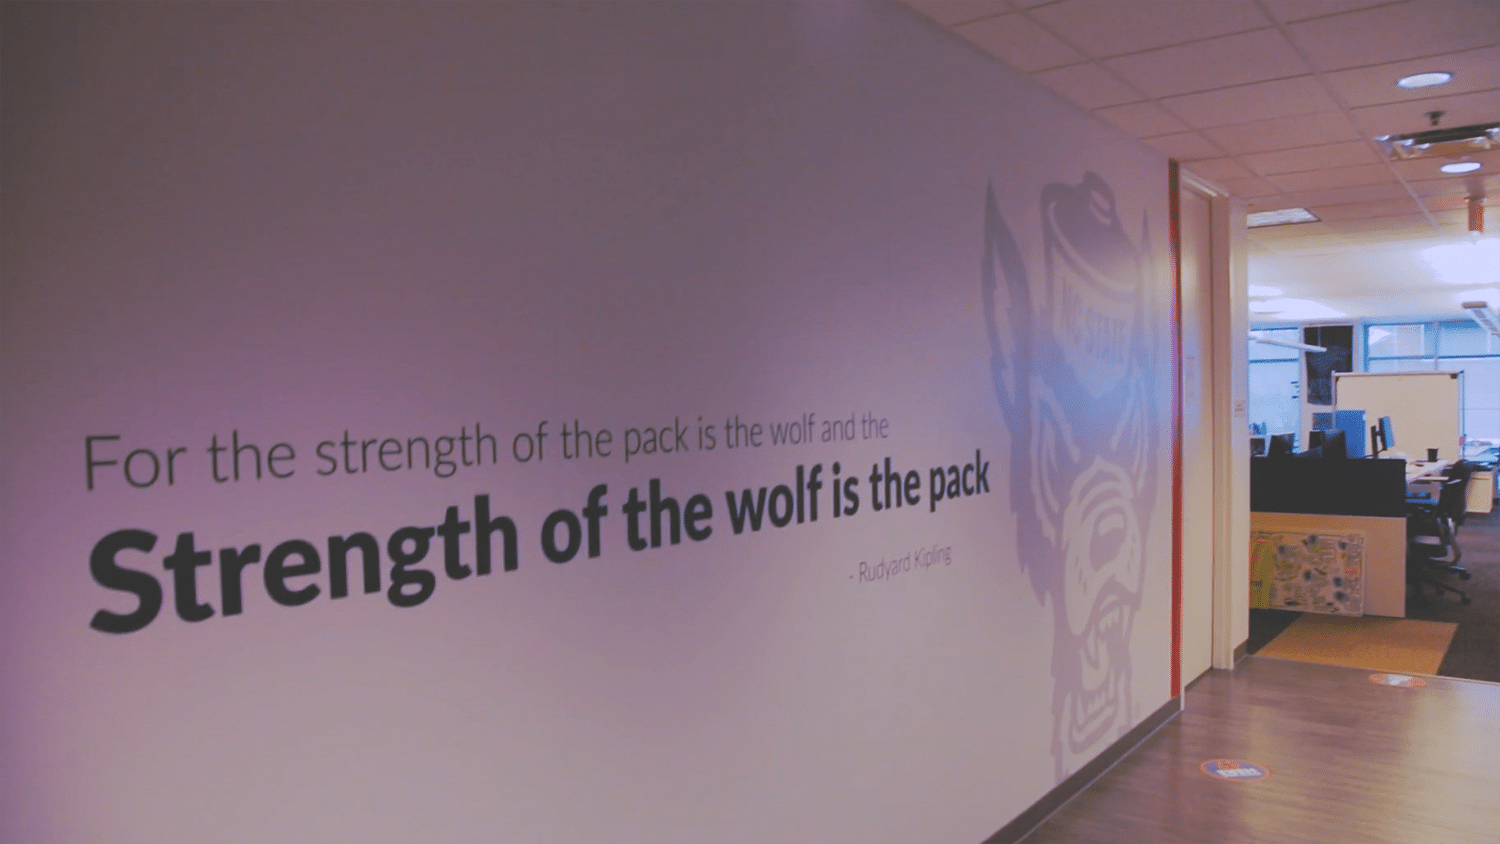 在lexisnexis办事处的壁画中，读物“为狼的力量而言，狼的力量是包装。”